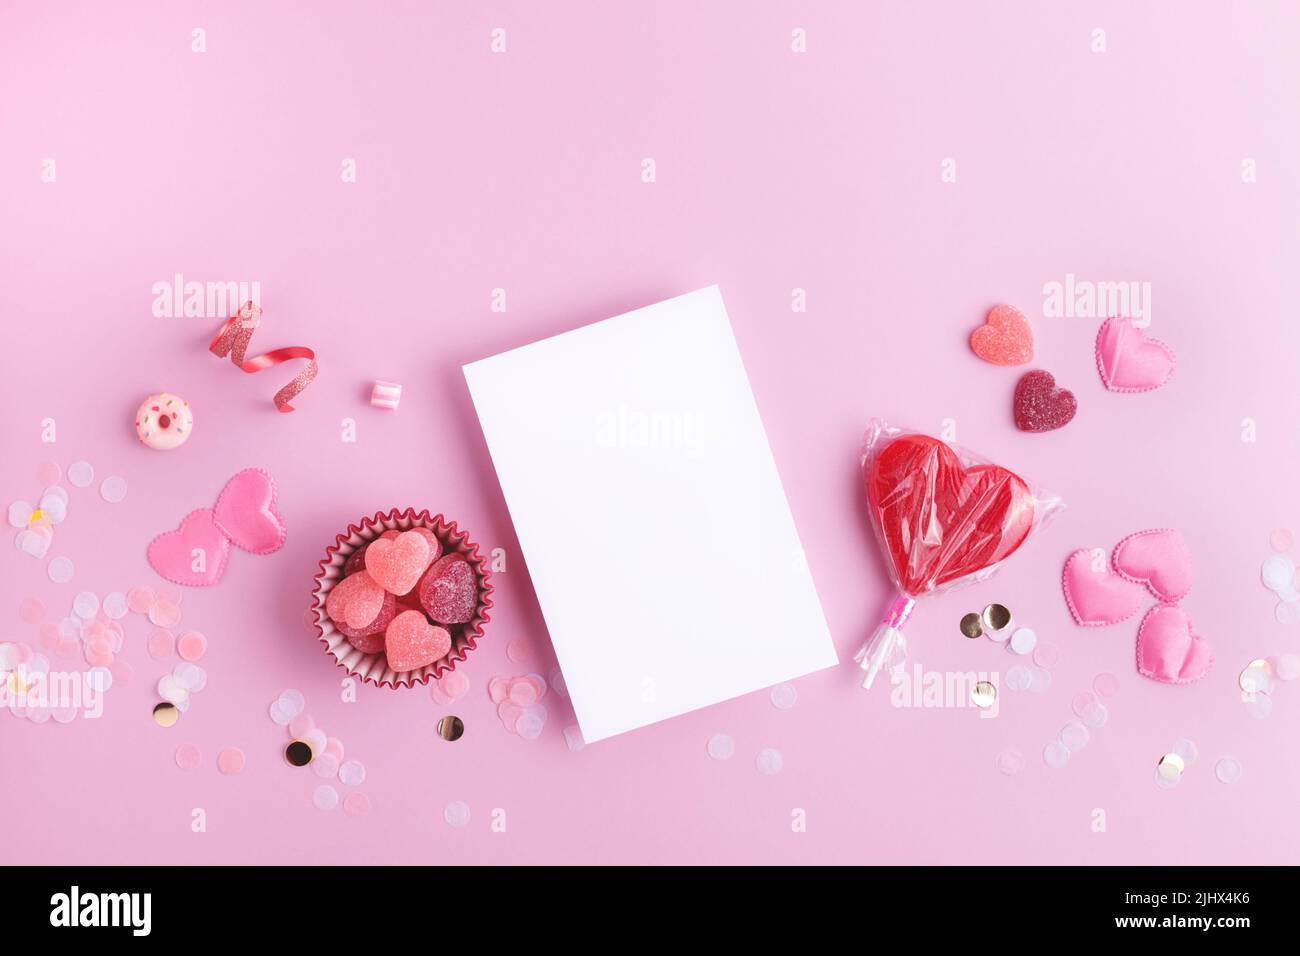 Giornata di San Valentino bella festa rosa sfondo con cuori, confetti e carta bianca per il tuo disegno. Disposizione piatta con spazio vuoto. Foto Stock